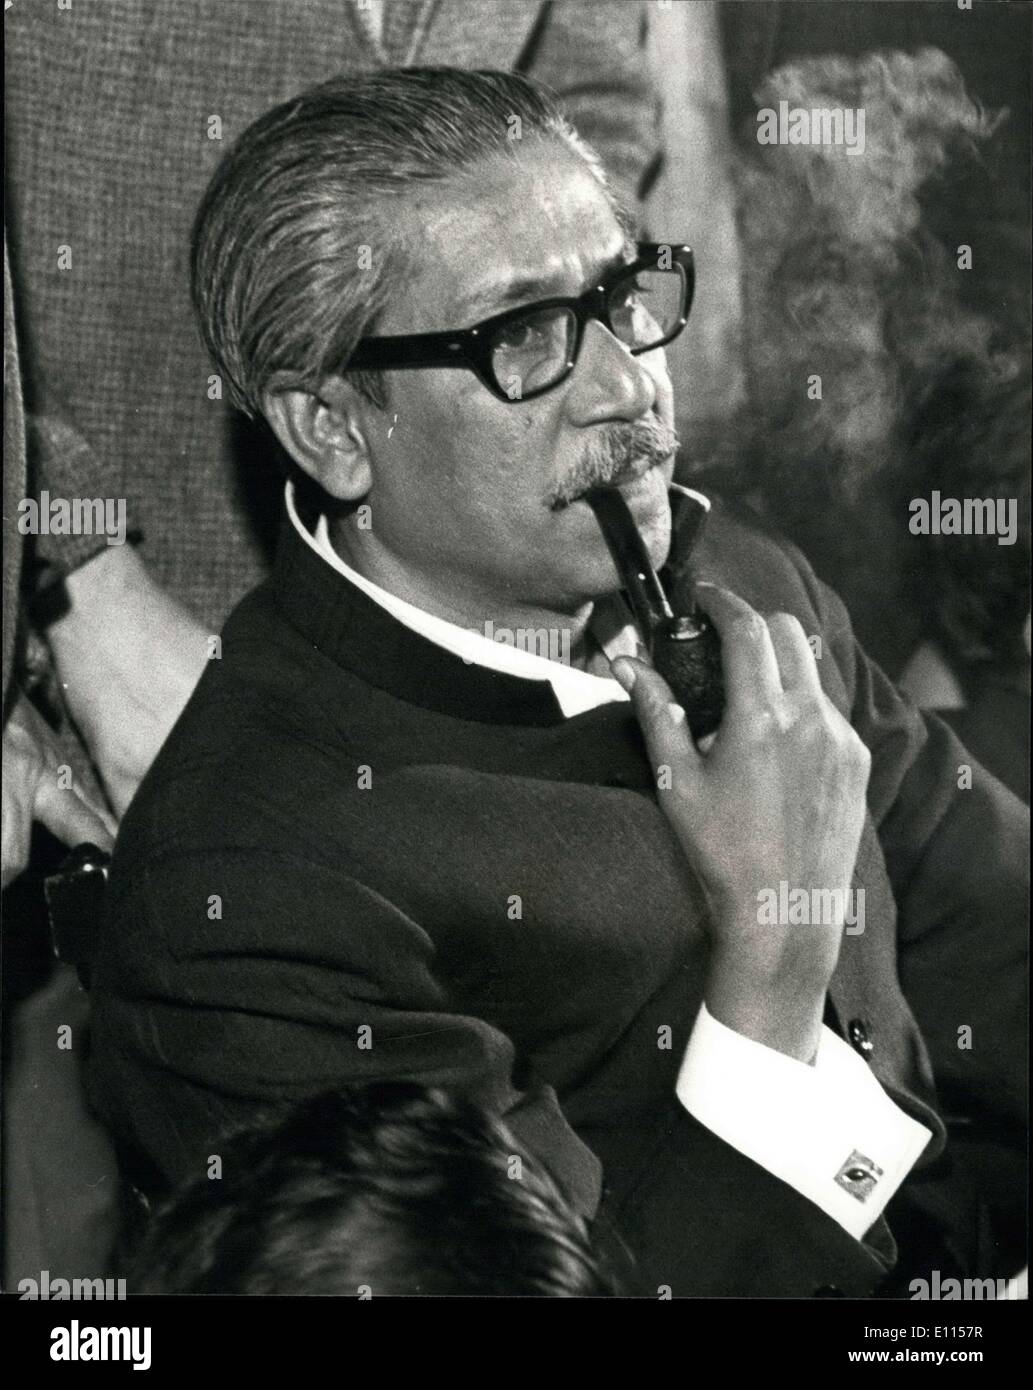 15 août 1975 - Cheikh Mujib Rahman tués au Bangladesh Bangladesh : Coup d'État le Président, Cheikh Mujibur Rahman, 55 ans, est aujourd'hui signalé tué dans un coup d'État dirigé par l'aube, le ministre du Commerce Khondker Mushtaque Ahmed, soutenu par les forces armées, selon le Bangladesh la radio aujourd'hui. La photo montre le Cheikh Mujibur Rahman photographié au cours d'une visite à Londres en 1972. Banque D'Images